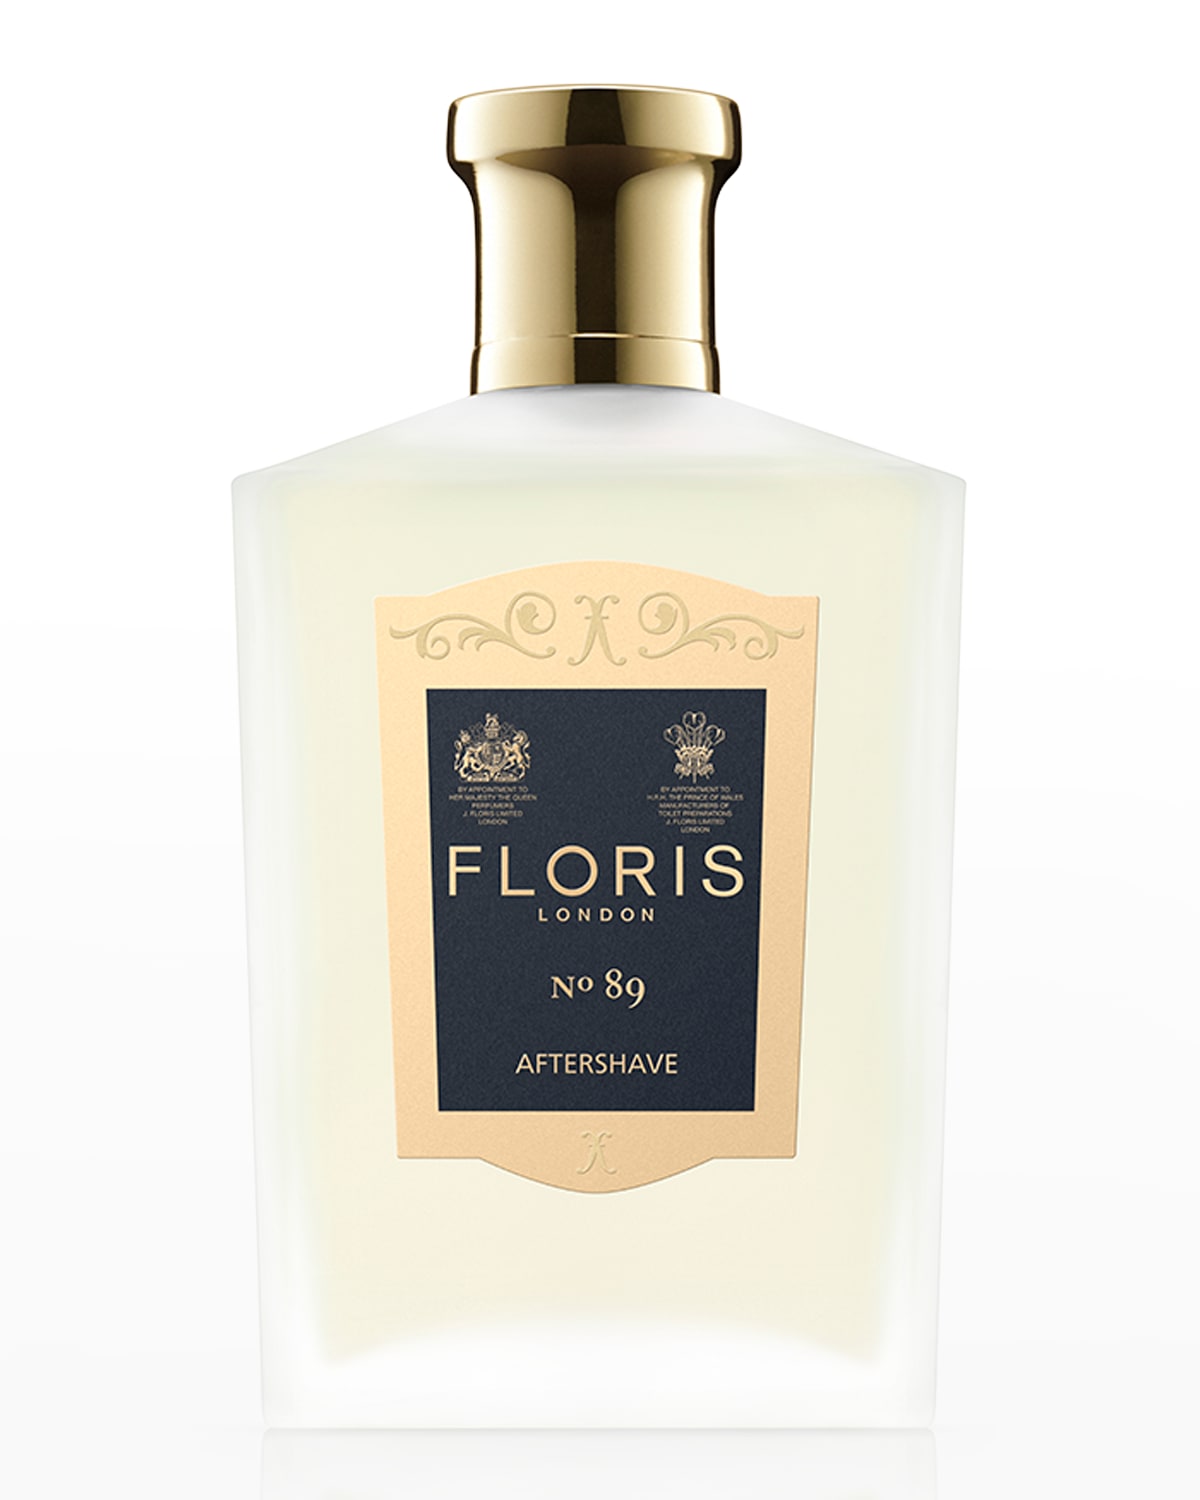 Floris London 3.4 oz. No.89 After Shave